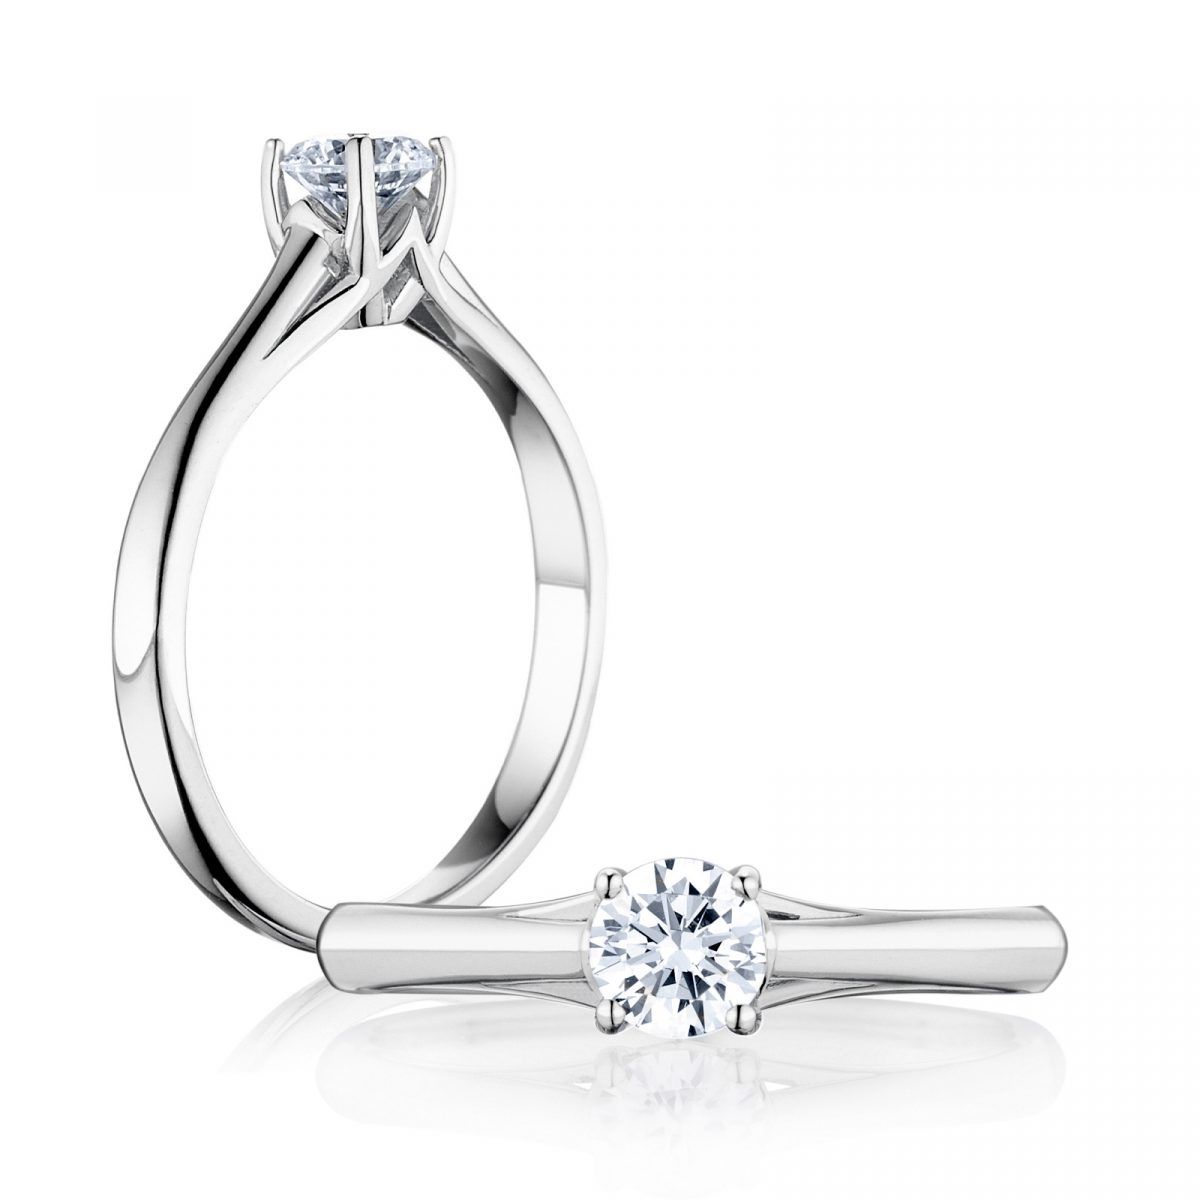 Prsteň Michelle - biele zlato s prírodným diamantom